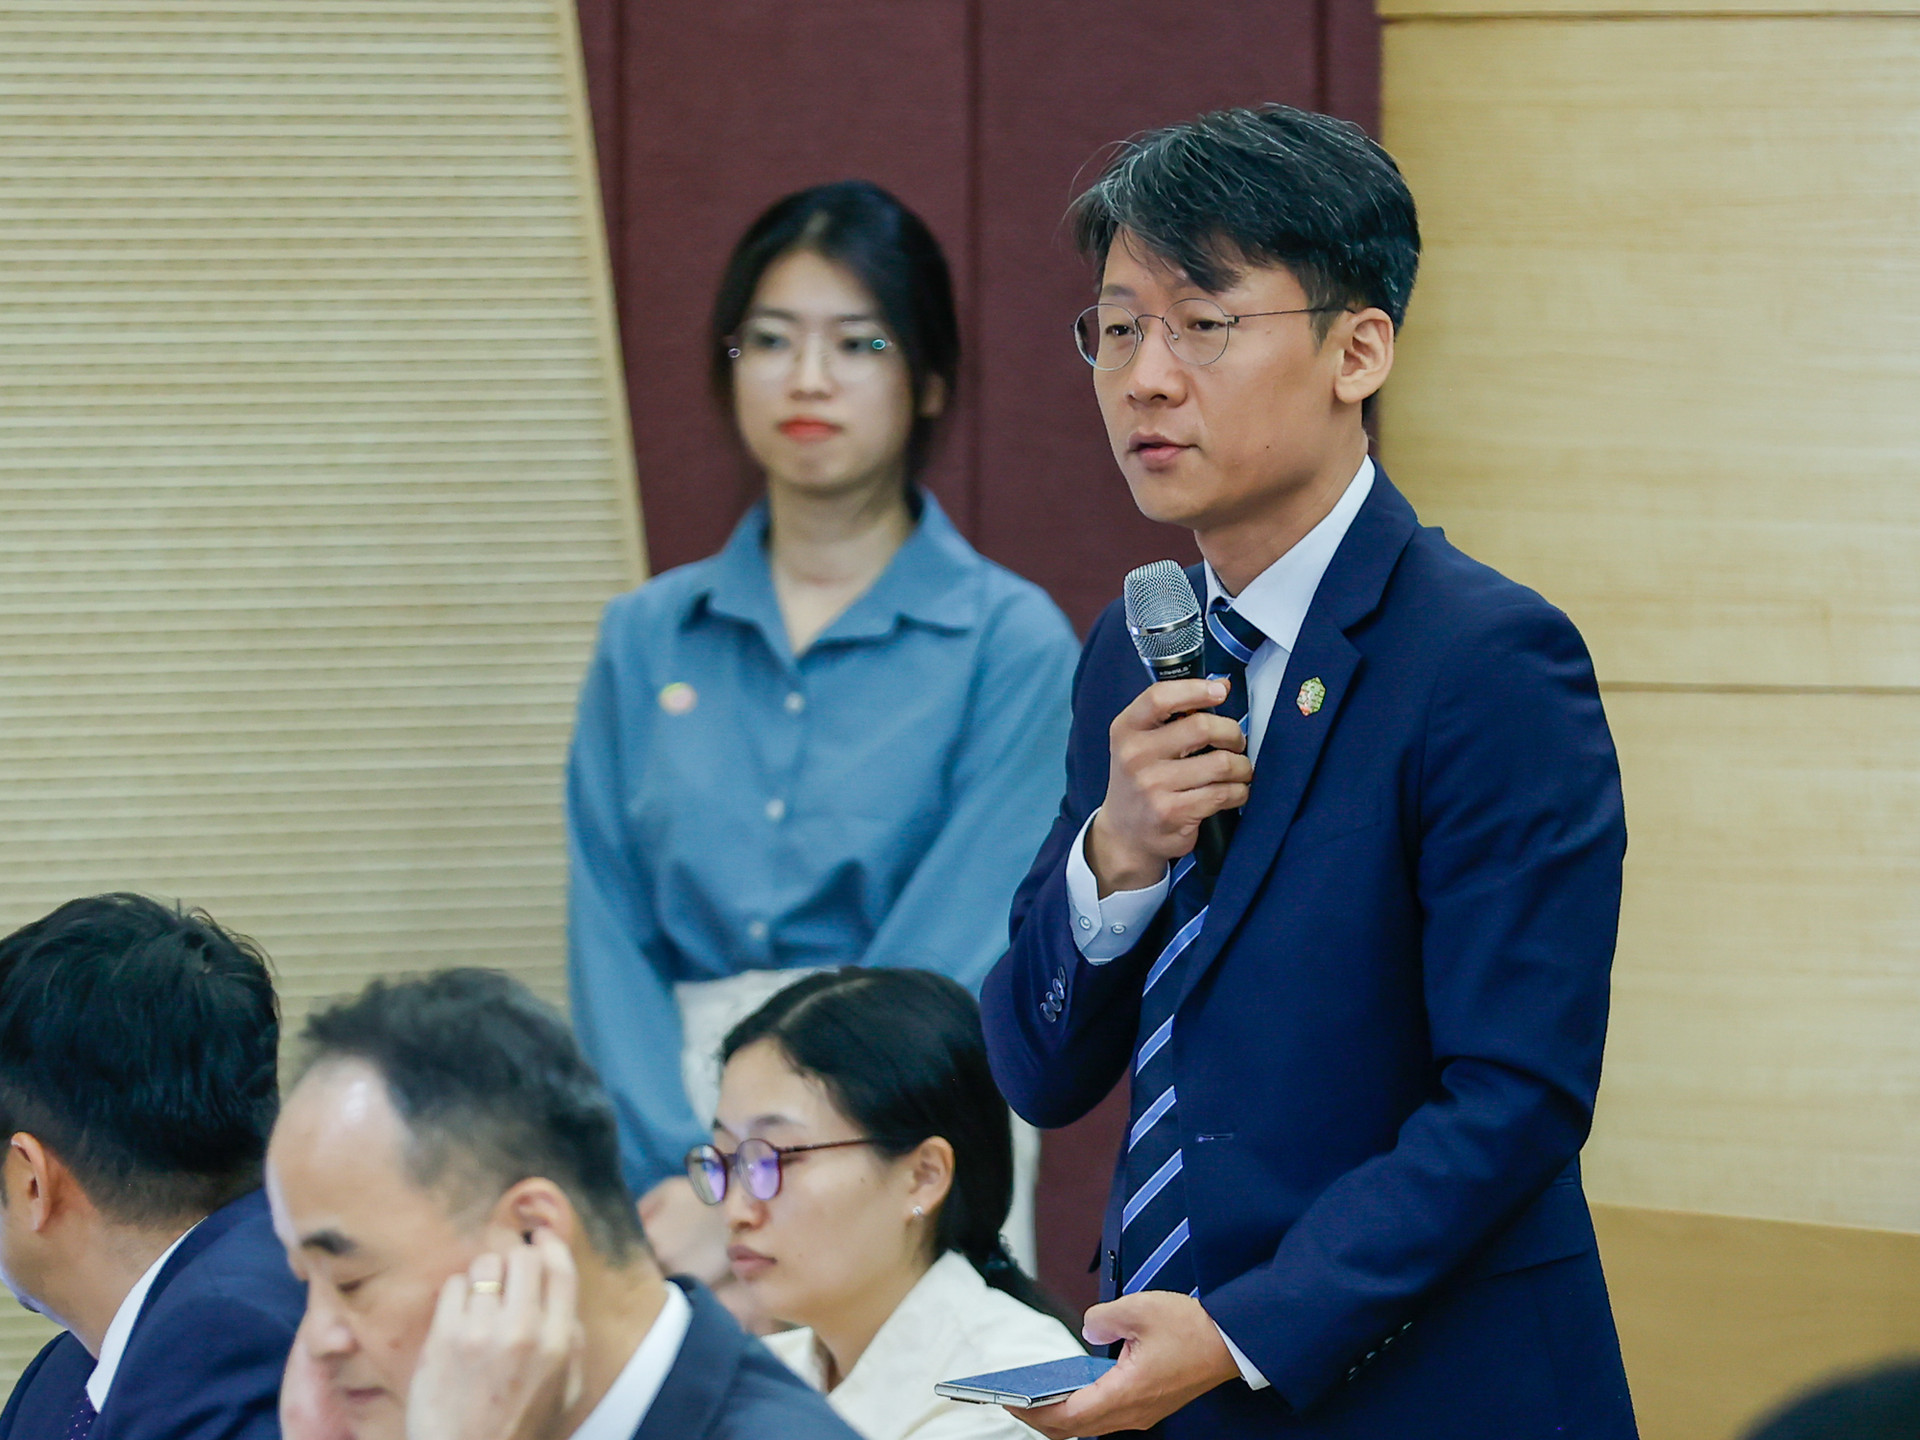 Thủ tướng gửi thông điệp quan trọng trong phát biểu chính sách tại Đại học Quốc gia của Hàn Quốc- Ảnh 9.